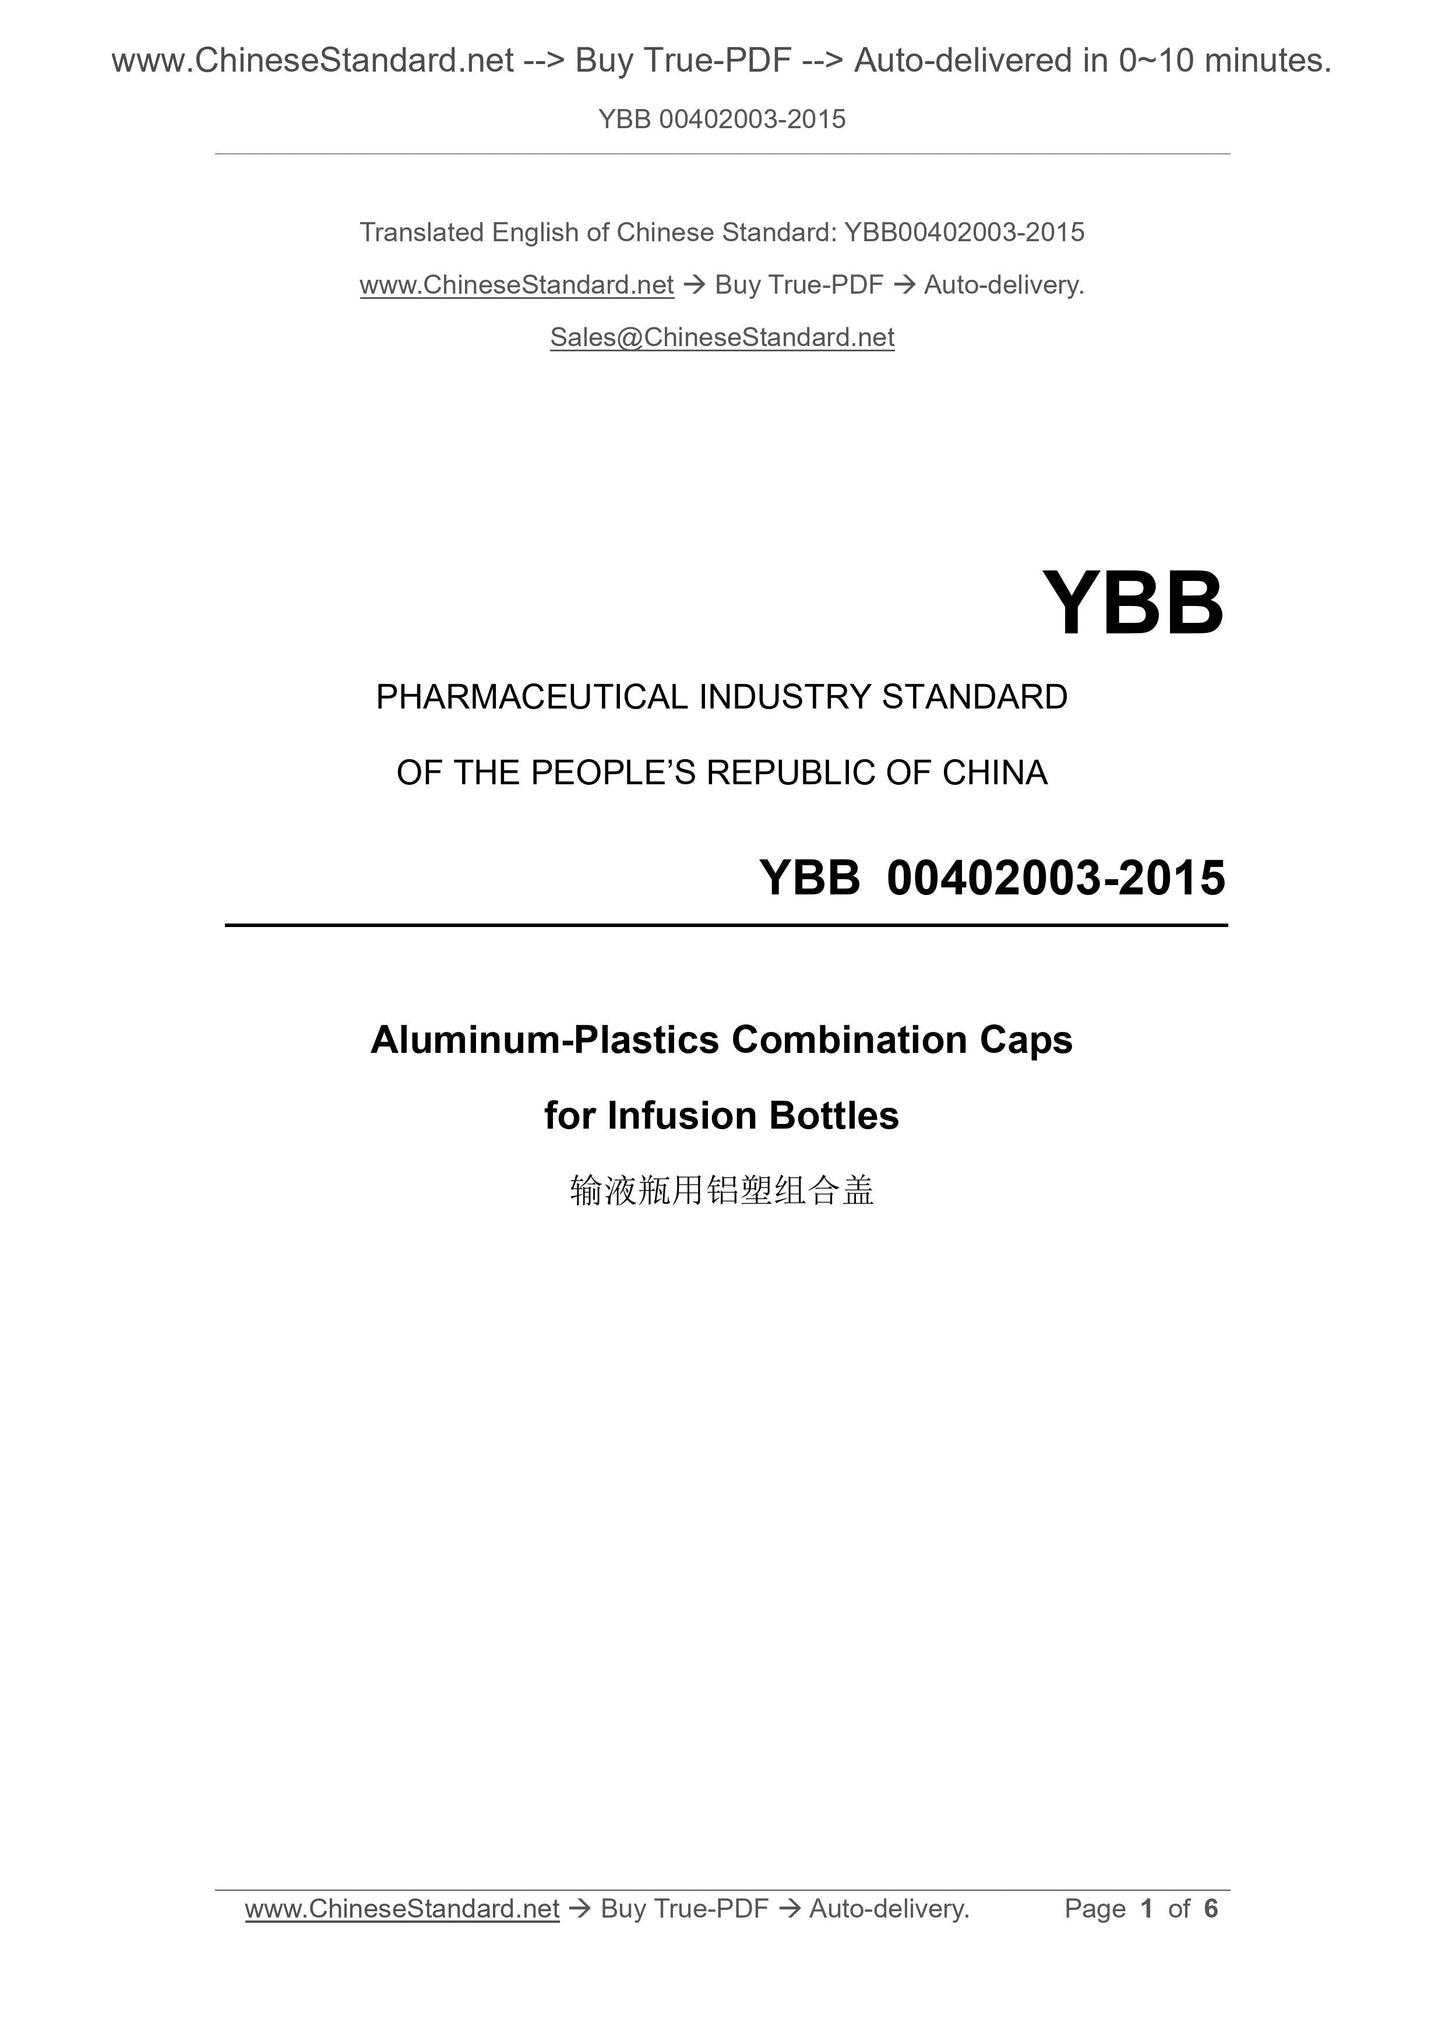 YBB 00402003-2015 Page 1